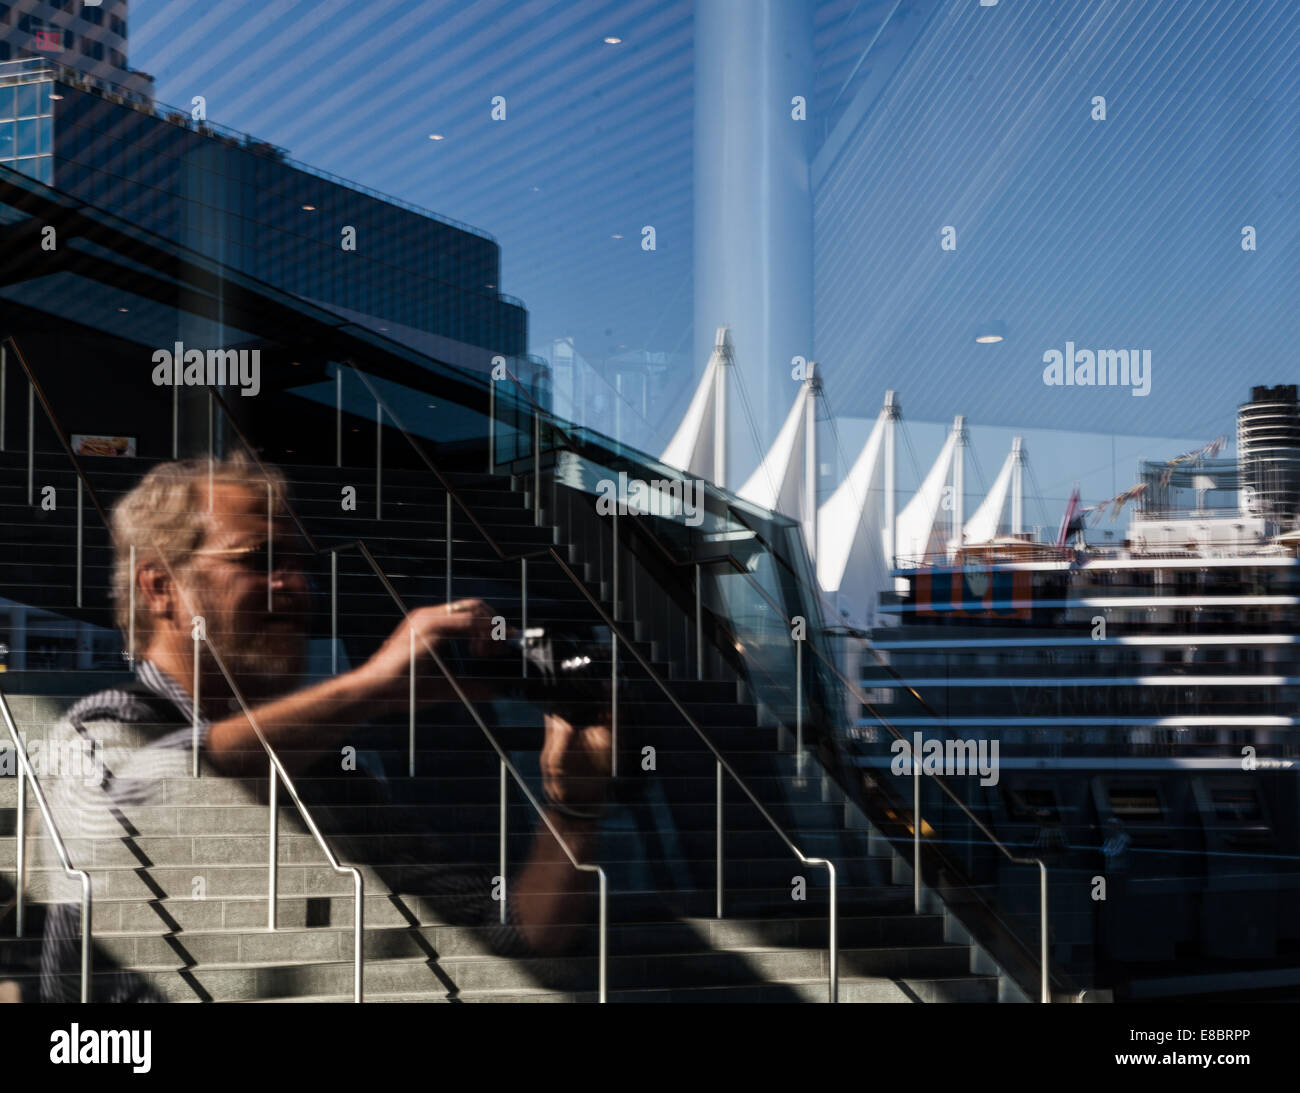 Un touriste mâle avec un appareil photo prenant une photo; le reflet de BC place, les voiles du bâtiment, et un bateau de croisière visible Banque D'Images